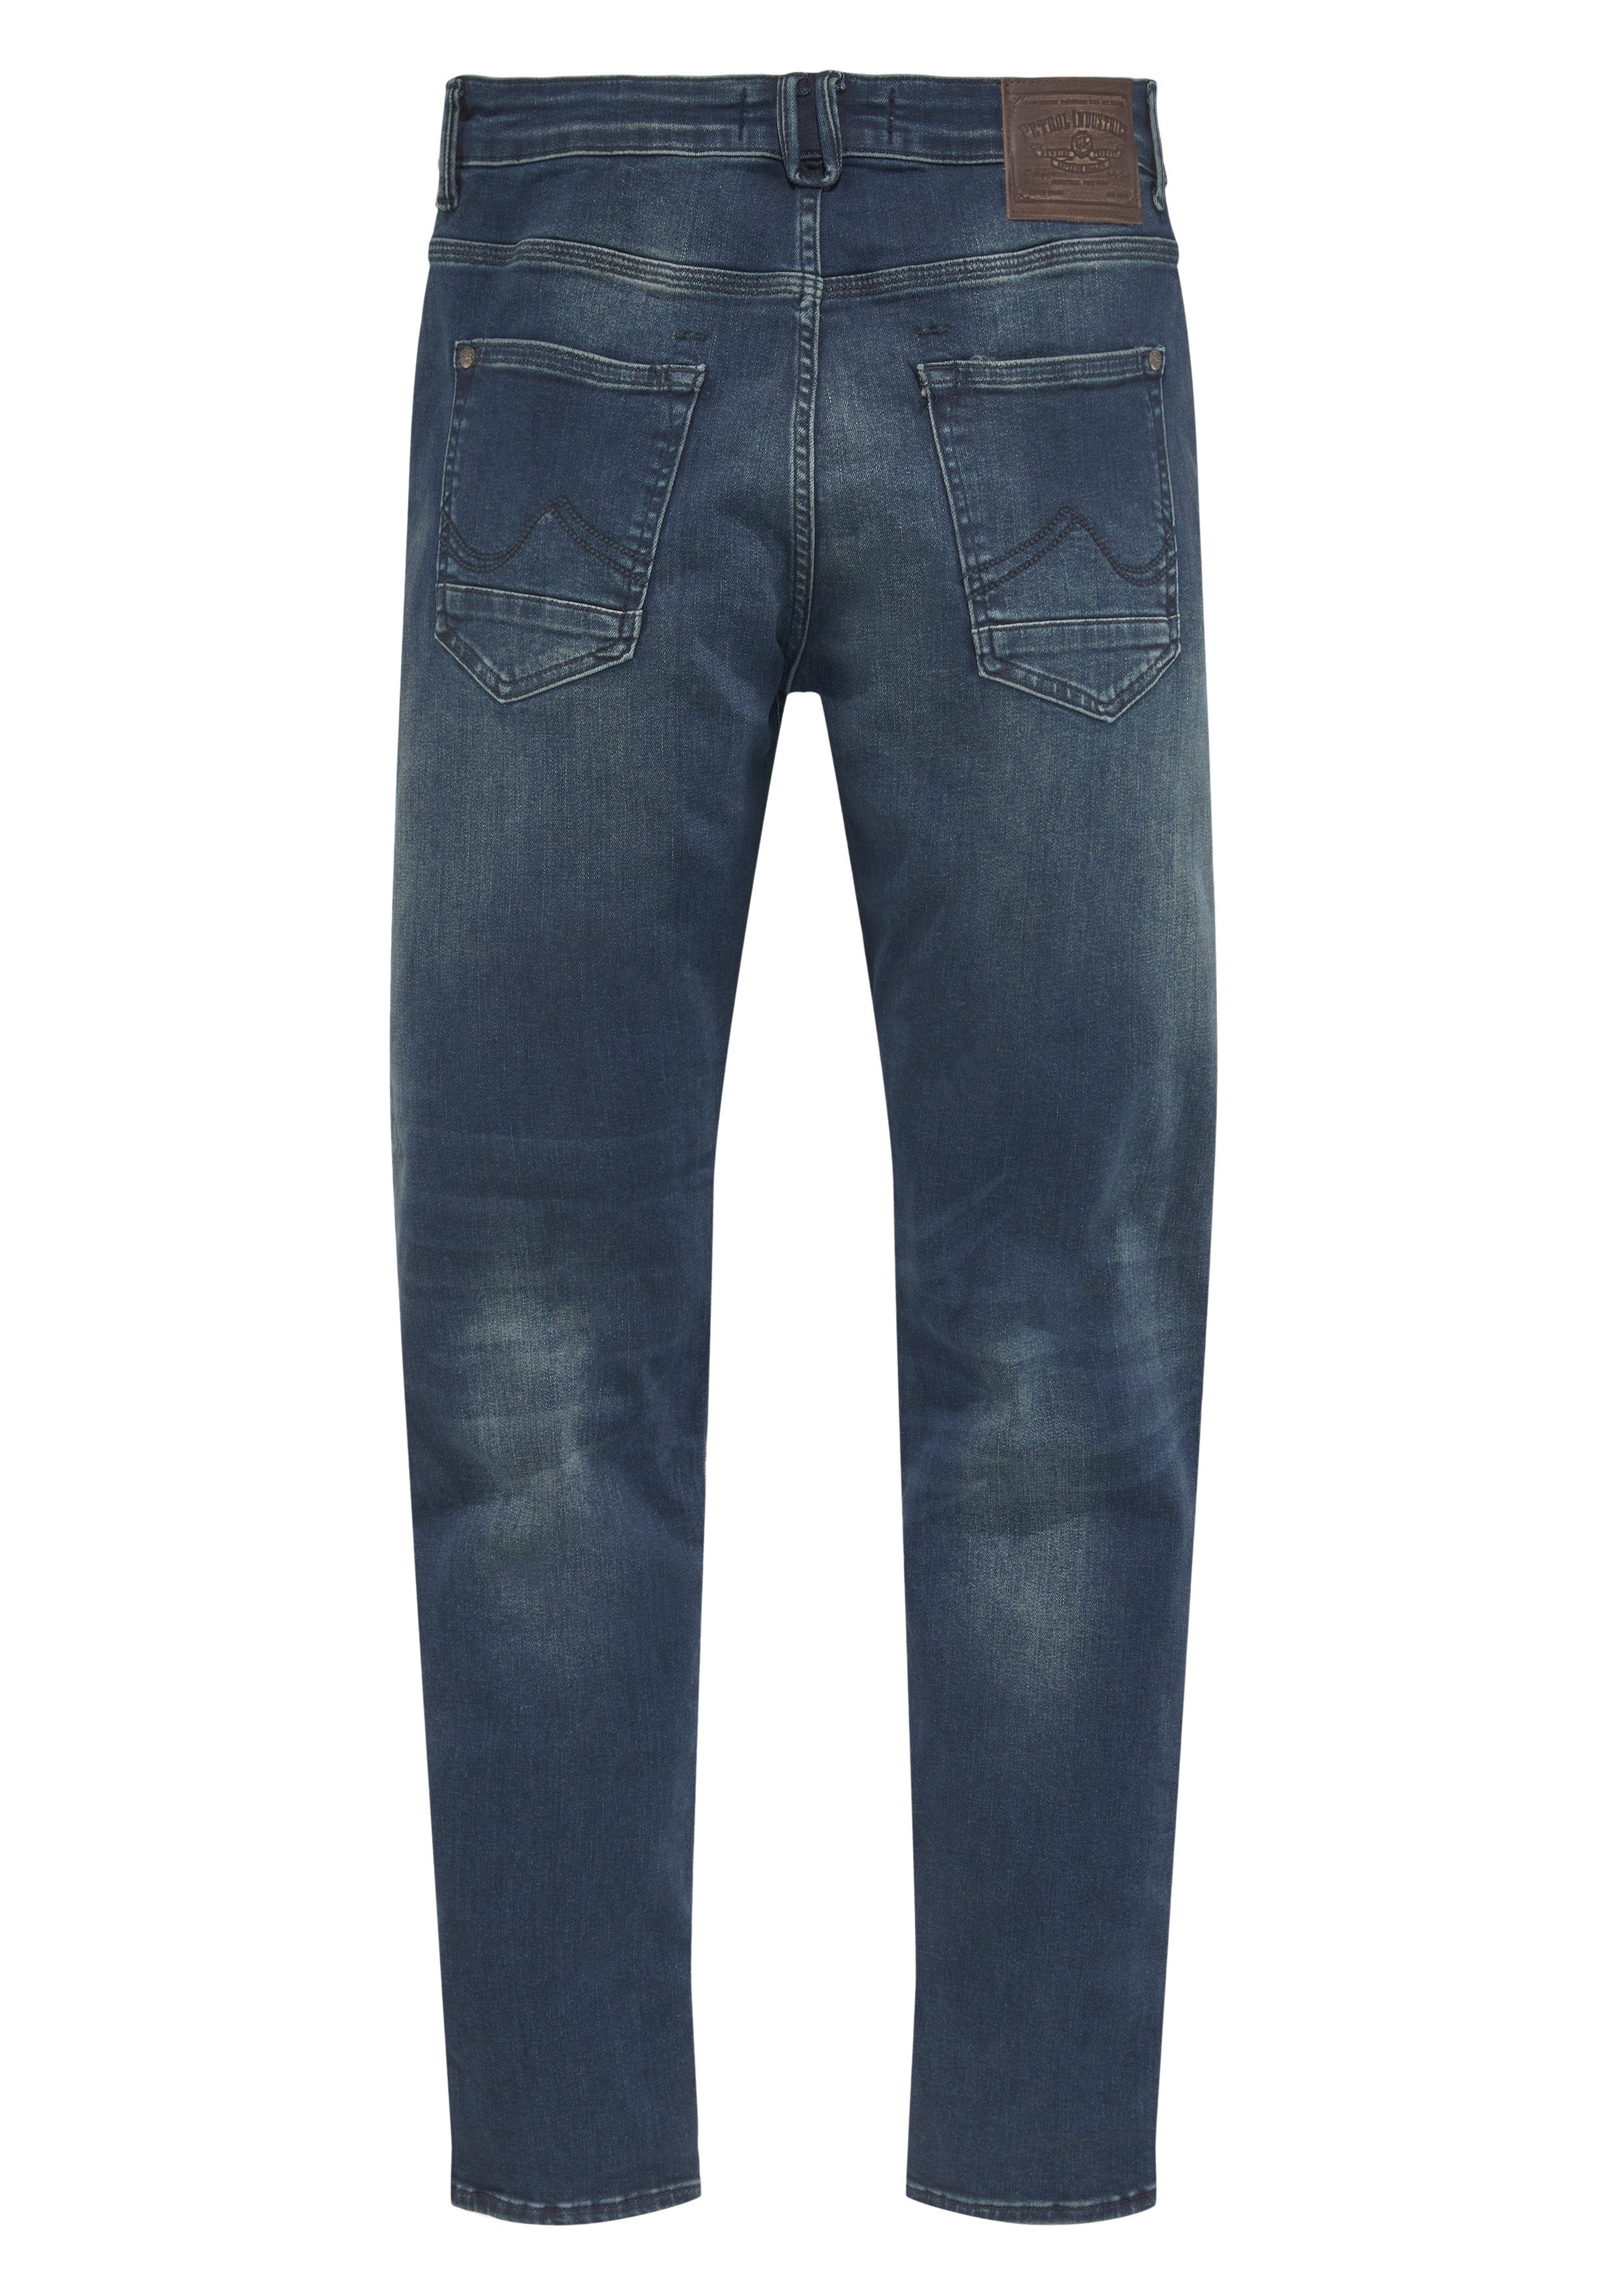 Petrol Industries Slim-fit-Jeans Seaham dark-coated